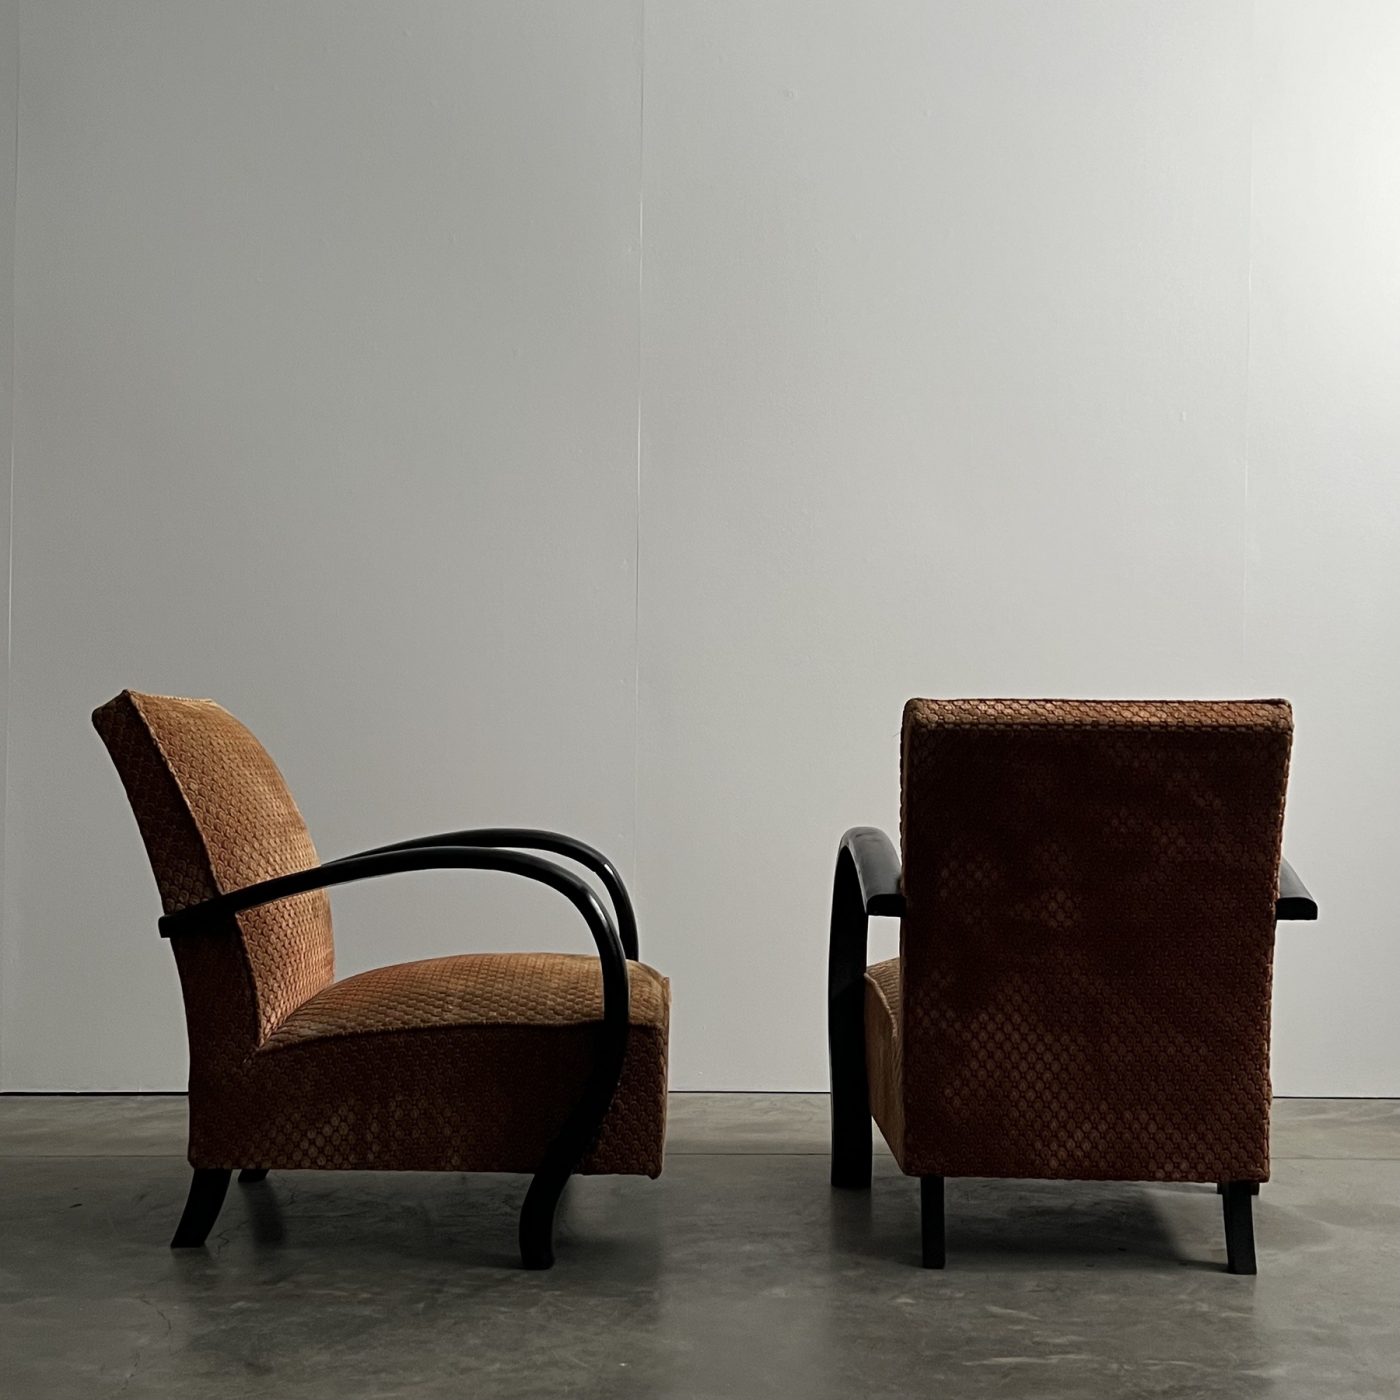 objet-vagabond-artdeco-armchairs0001